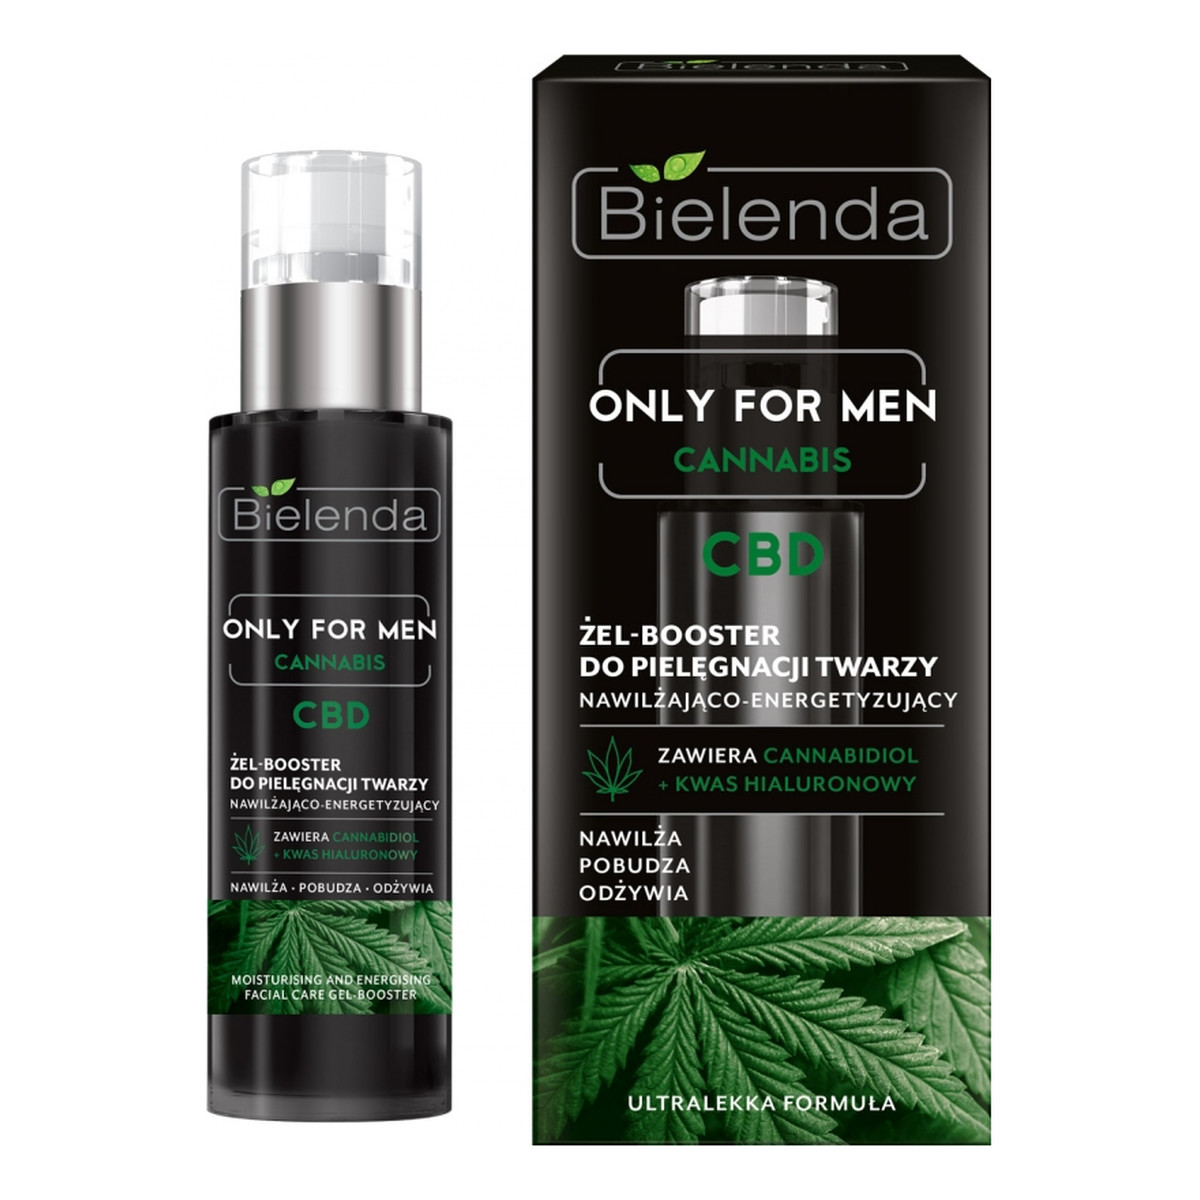 Bielenda Only for Men Cannabis CBD Żel-Booster do pielęgnacji twarzy 30ml